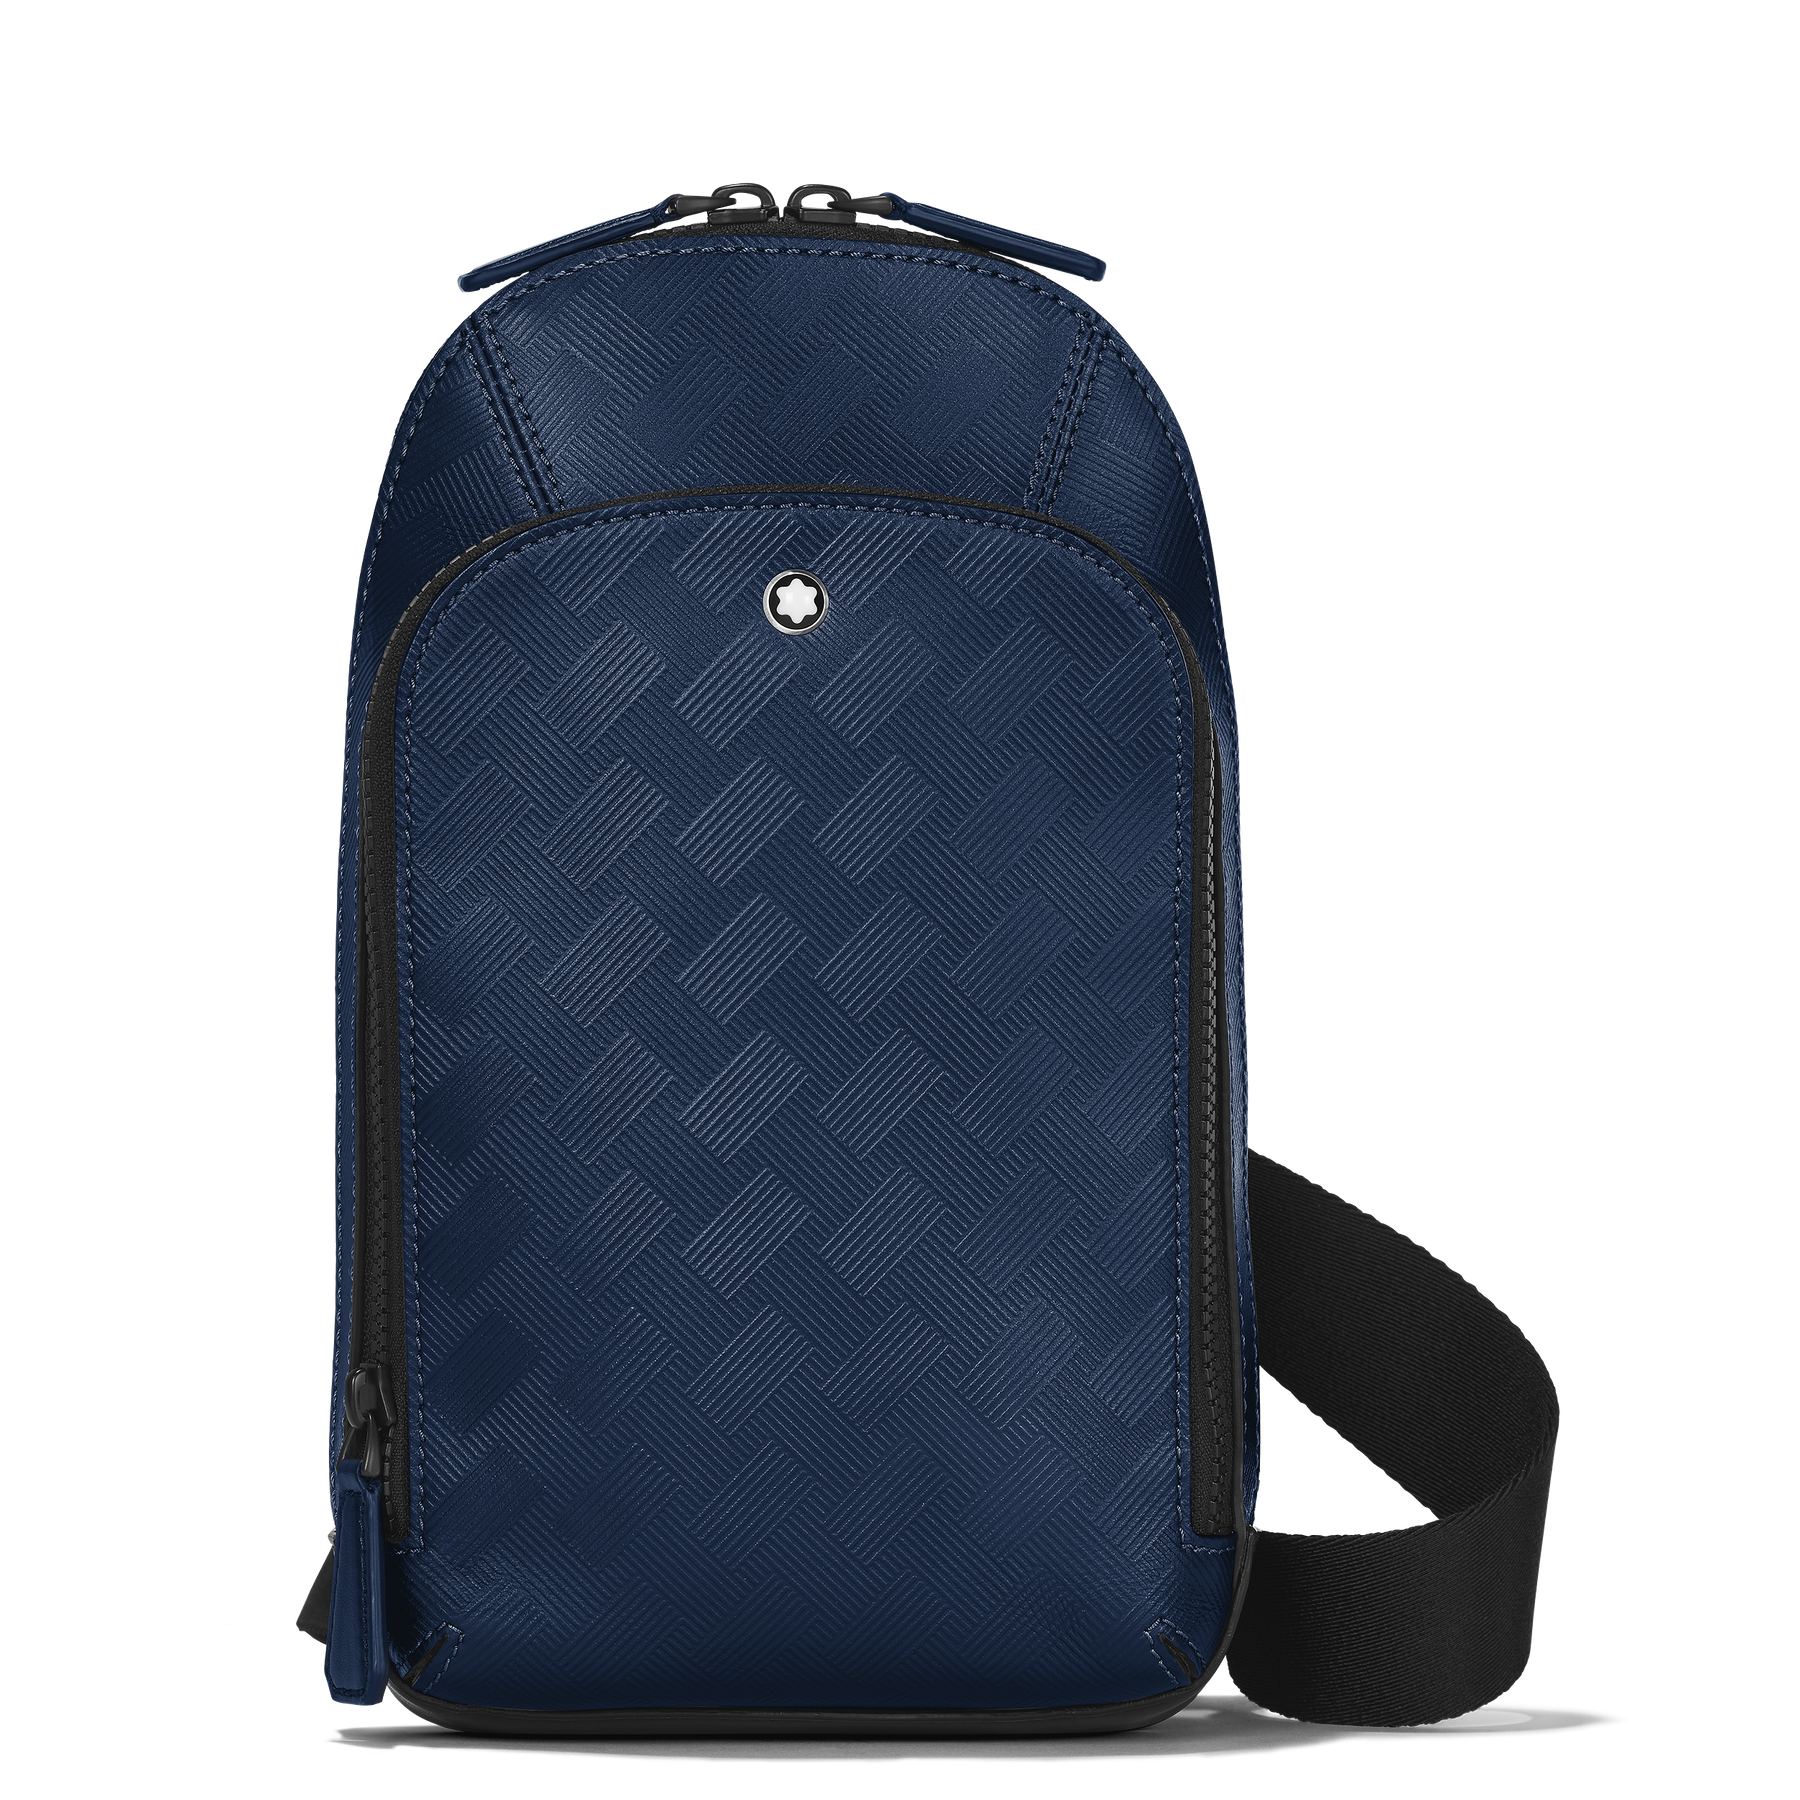 Extreme 3.0 sling bag